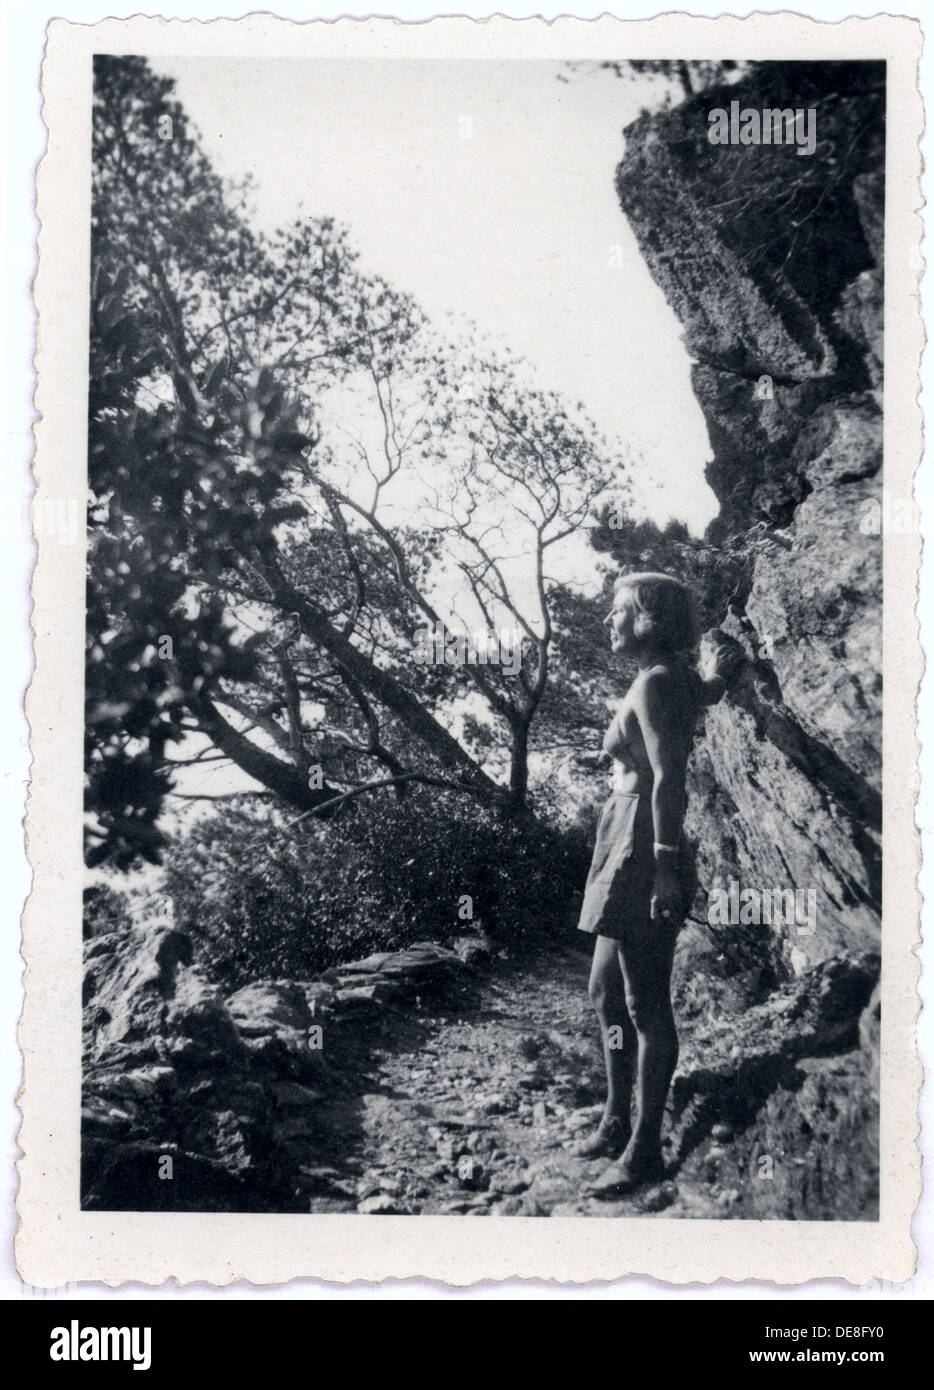 Marina Tsvetaeva in the mountains, 1930s. Stock Photo